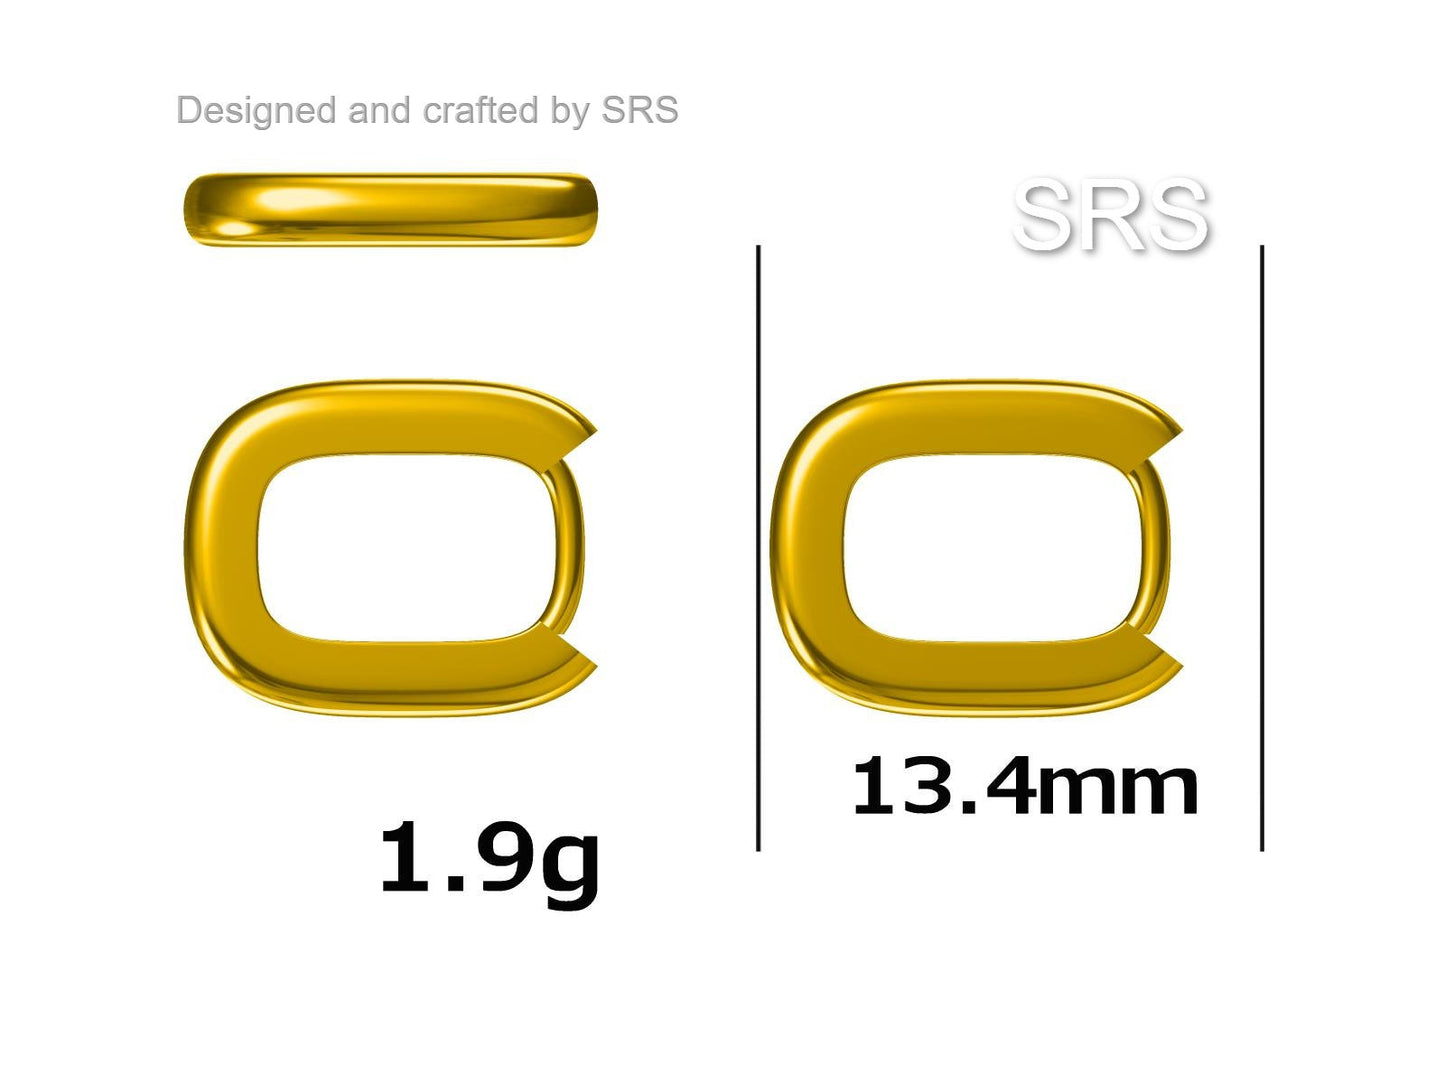 Pair of Small Rectangular Hoop Earrings in Sterling Silver, Oval Hoop Earrings, Chunky Hoop Earrings, Silver or Gold, Square Hoop Earrings